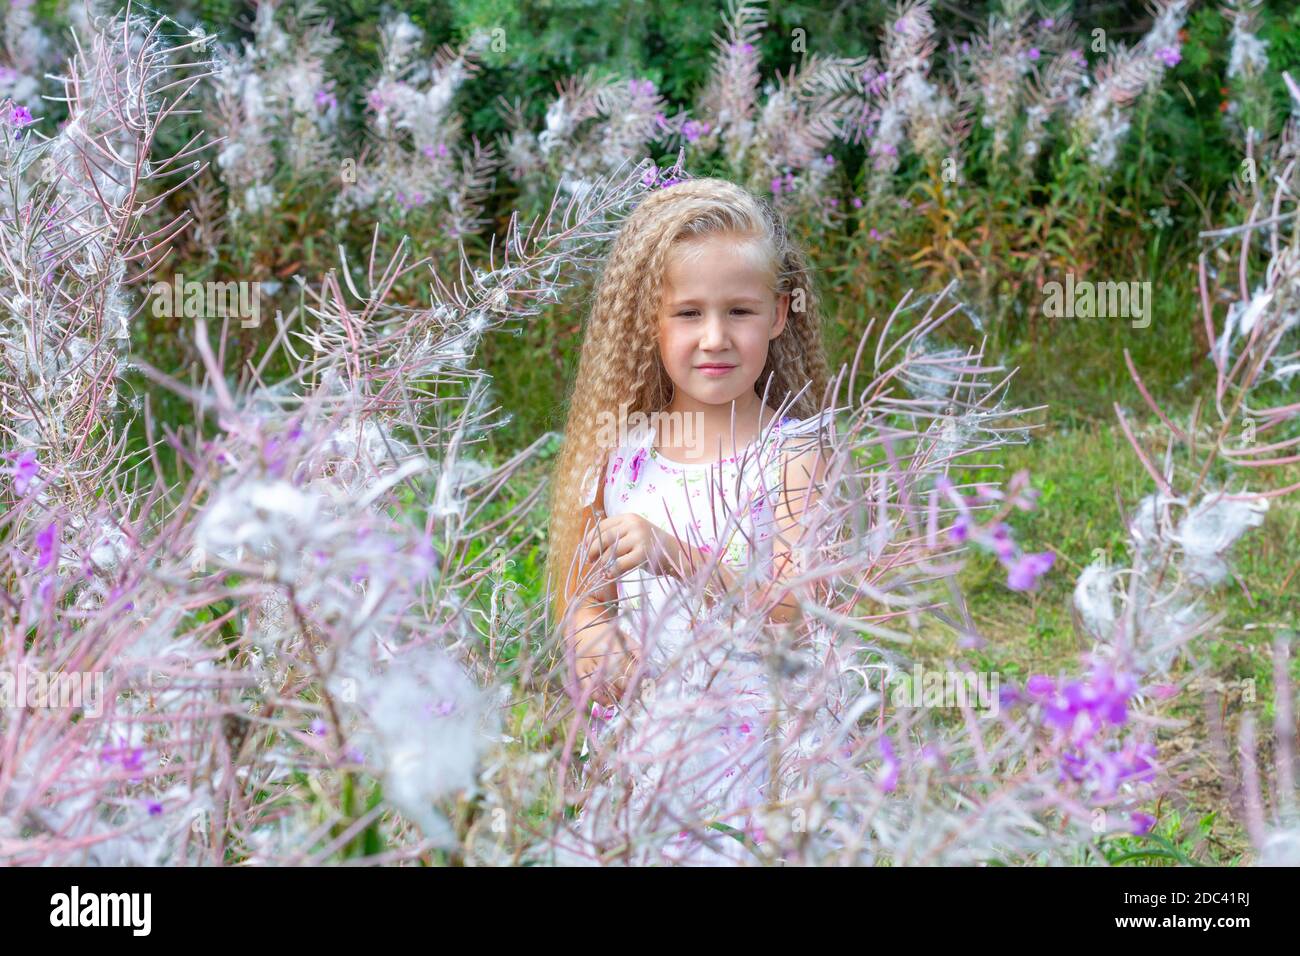 Une petite fille blonde de 5-6 ans dans une sundress blanche est entourée par Sally en fleur, la mauvaise herbe à feu. Cheveux longs blonds bouclés, coiffure. Été, na Banque D'Images